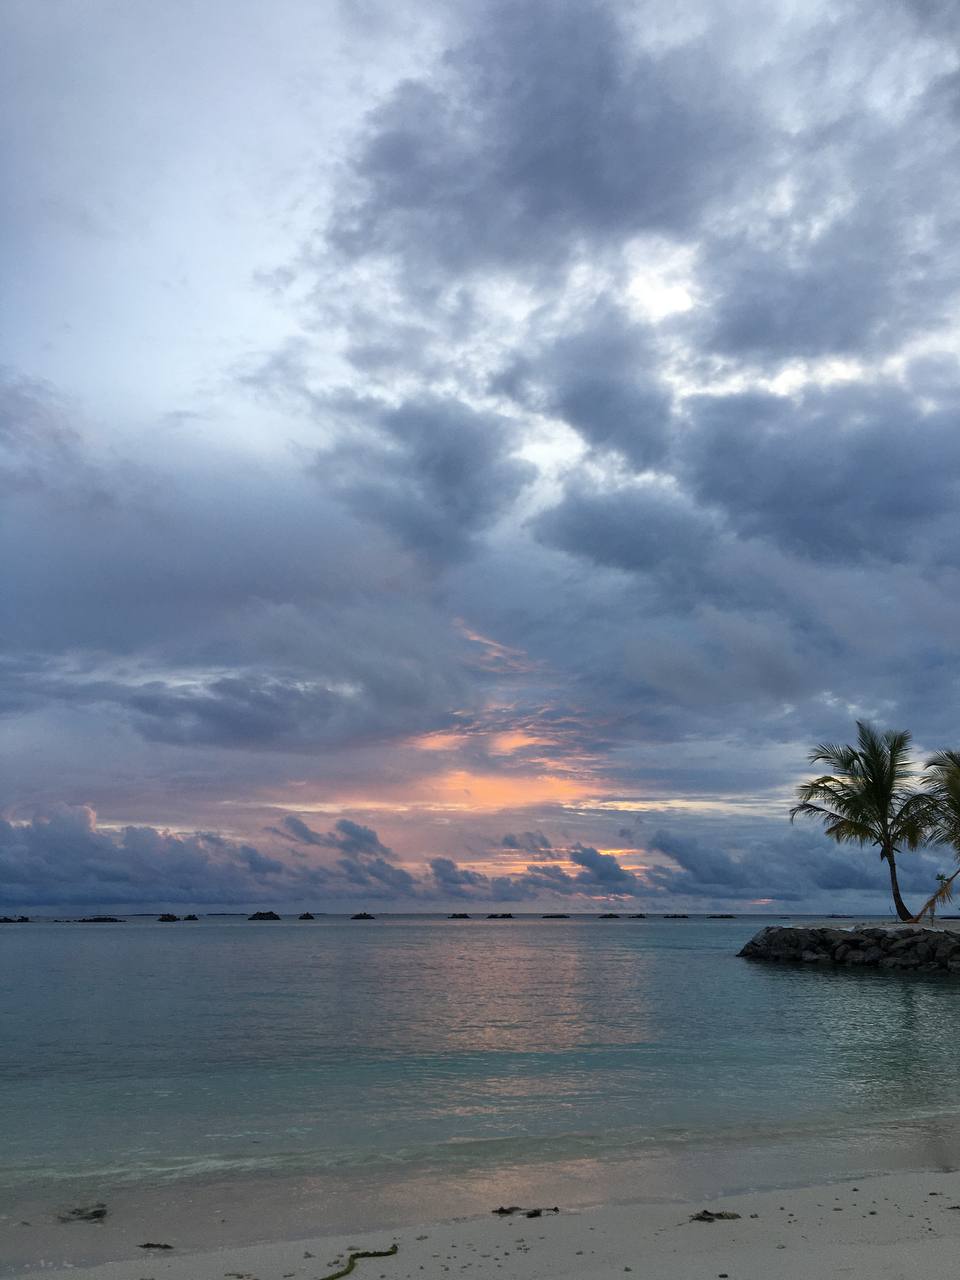 Солнце, море, белый песок и модная музыка каждый вечер. «Мечта», — скажете вы. А для владимирской художницы, дизайнера и модели Юлии Лейи все это стало рабочим местом. Неожиданно для самой себя она попала на Мальдивы в качестве диджея.